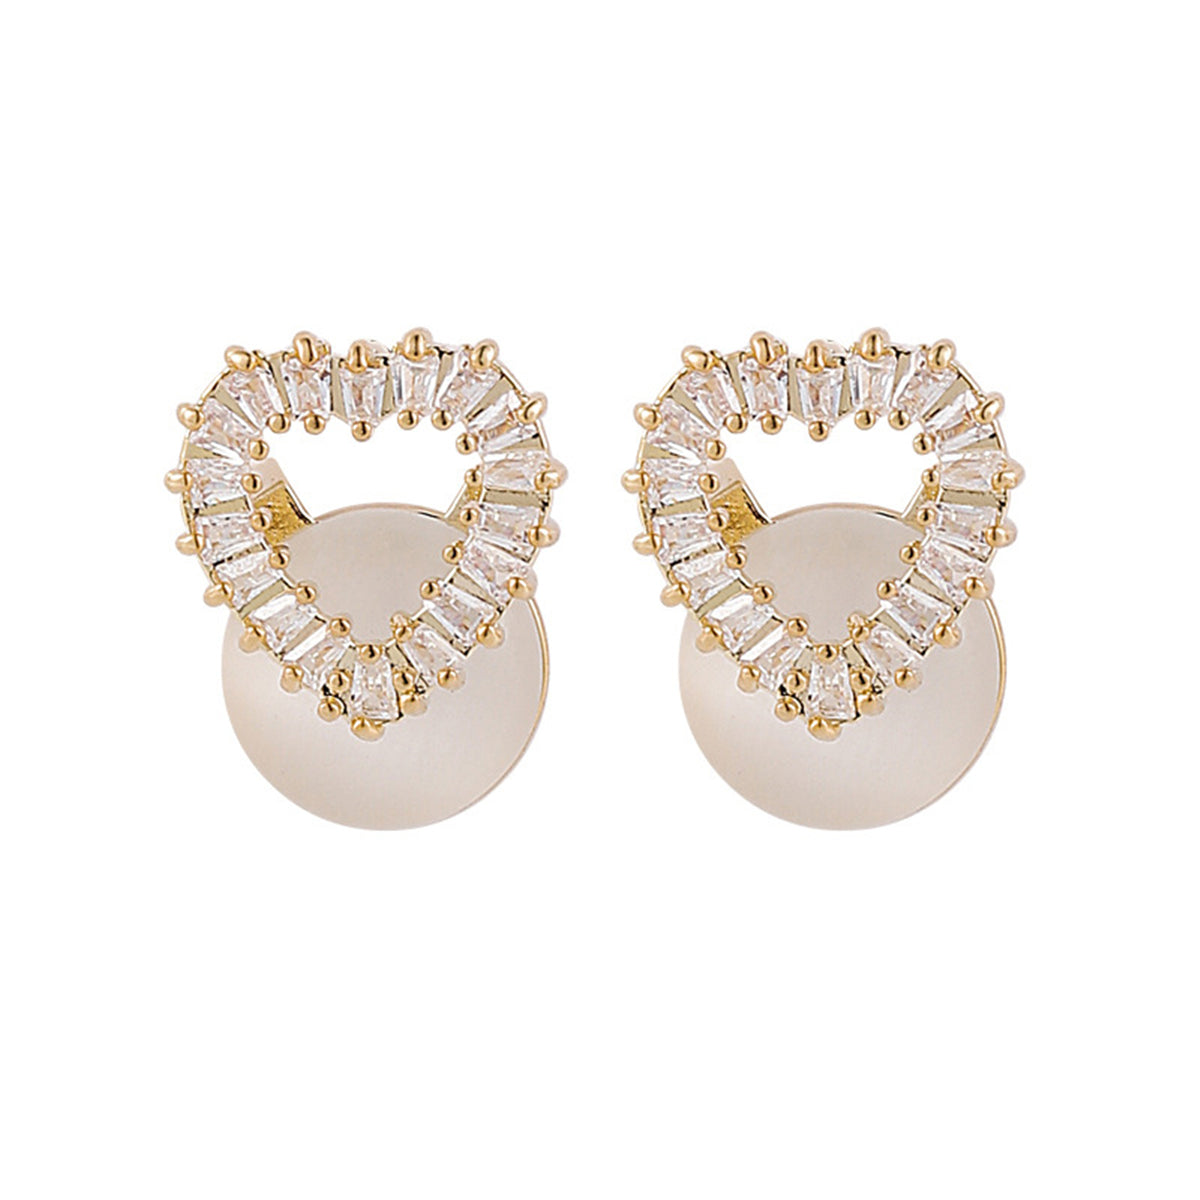 Clear Cubic Zirconia & Cateye 18K Gold-Plated Heart Stud Earrings